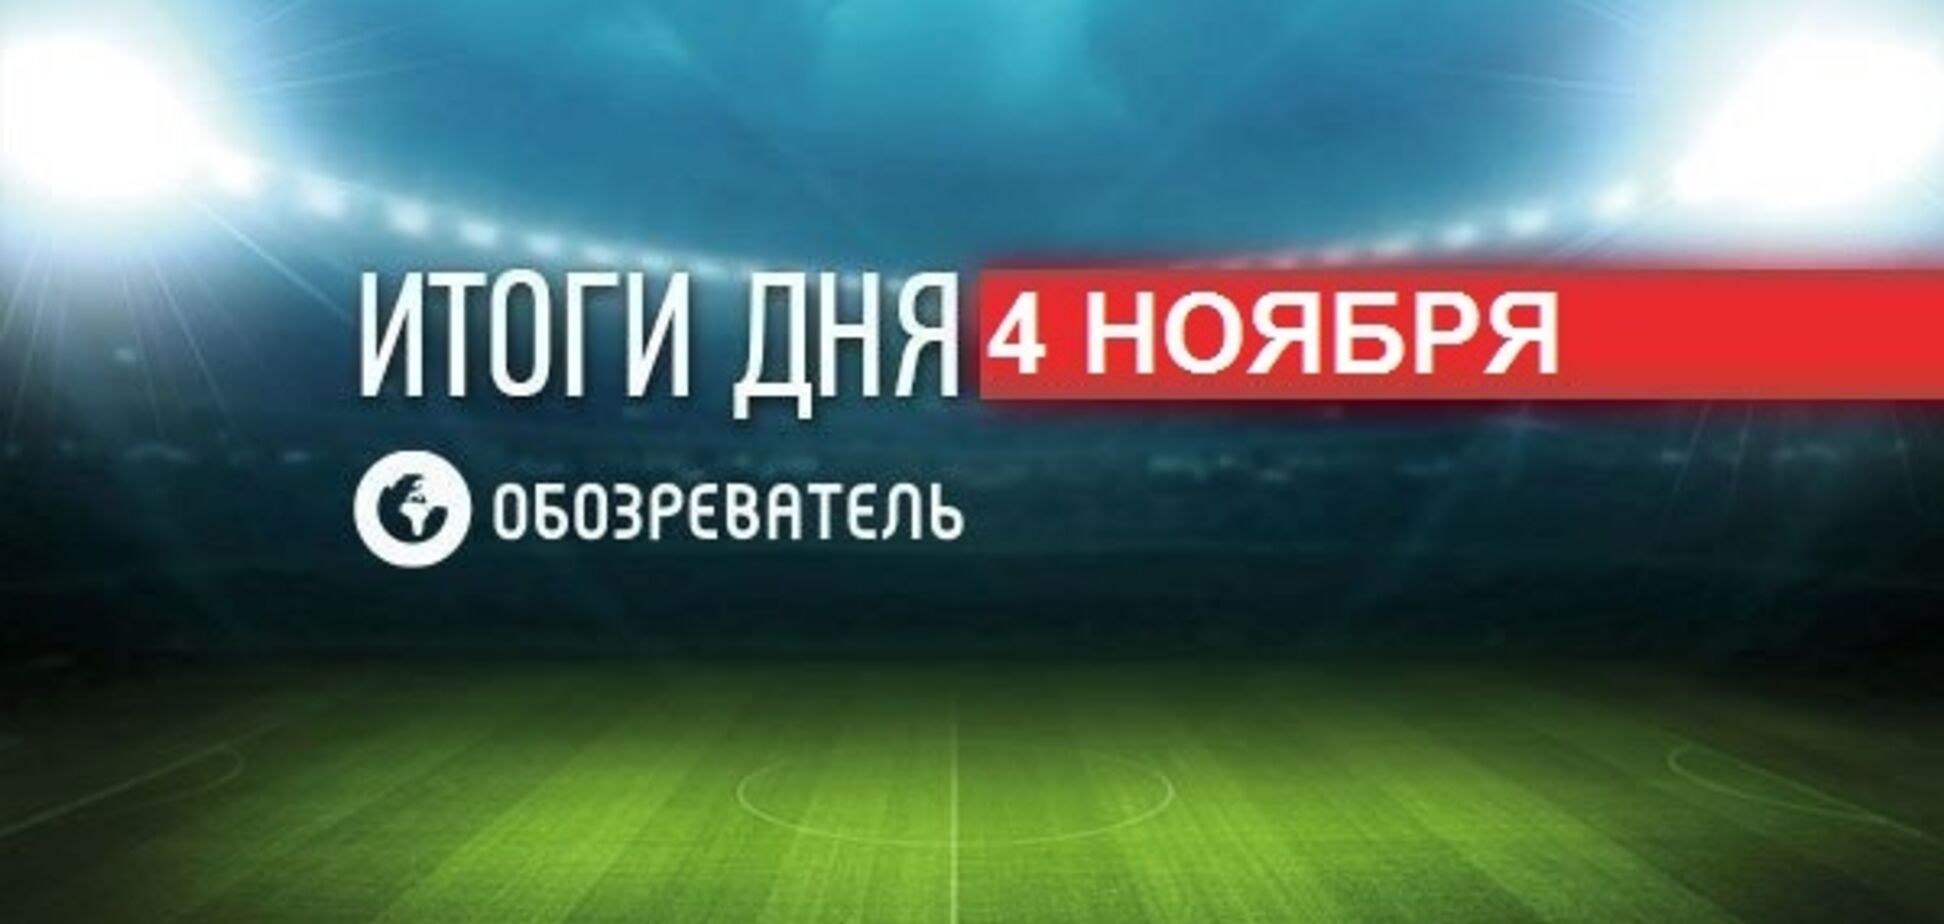 WBC ответил критикам Ломаченко: спортивные итоги 4 ноября